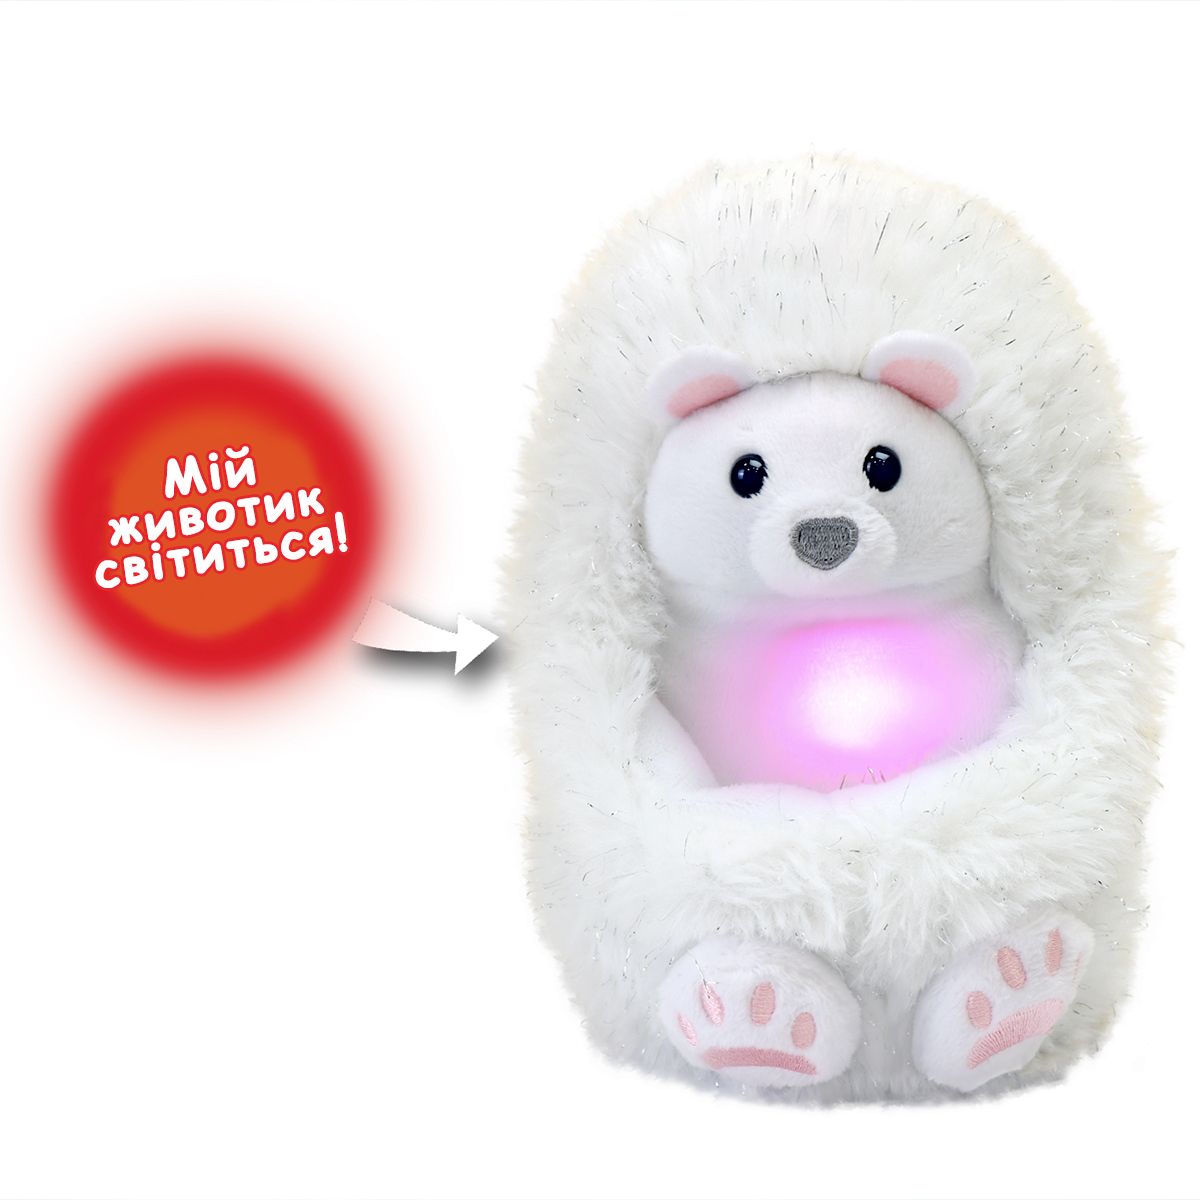 Інтерактивна іграшка CURLIMALS серії "Arctic Glow" - Полярний ведмедик Перрі